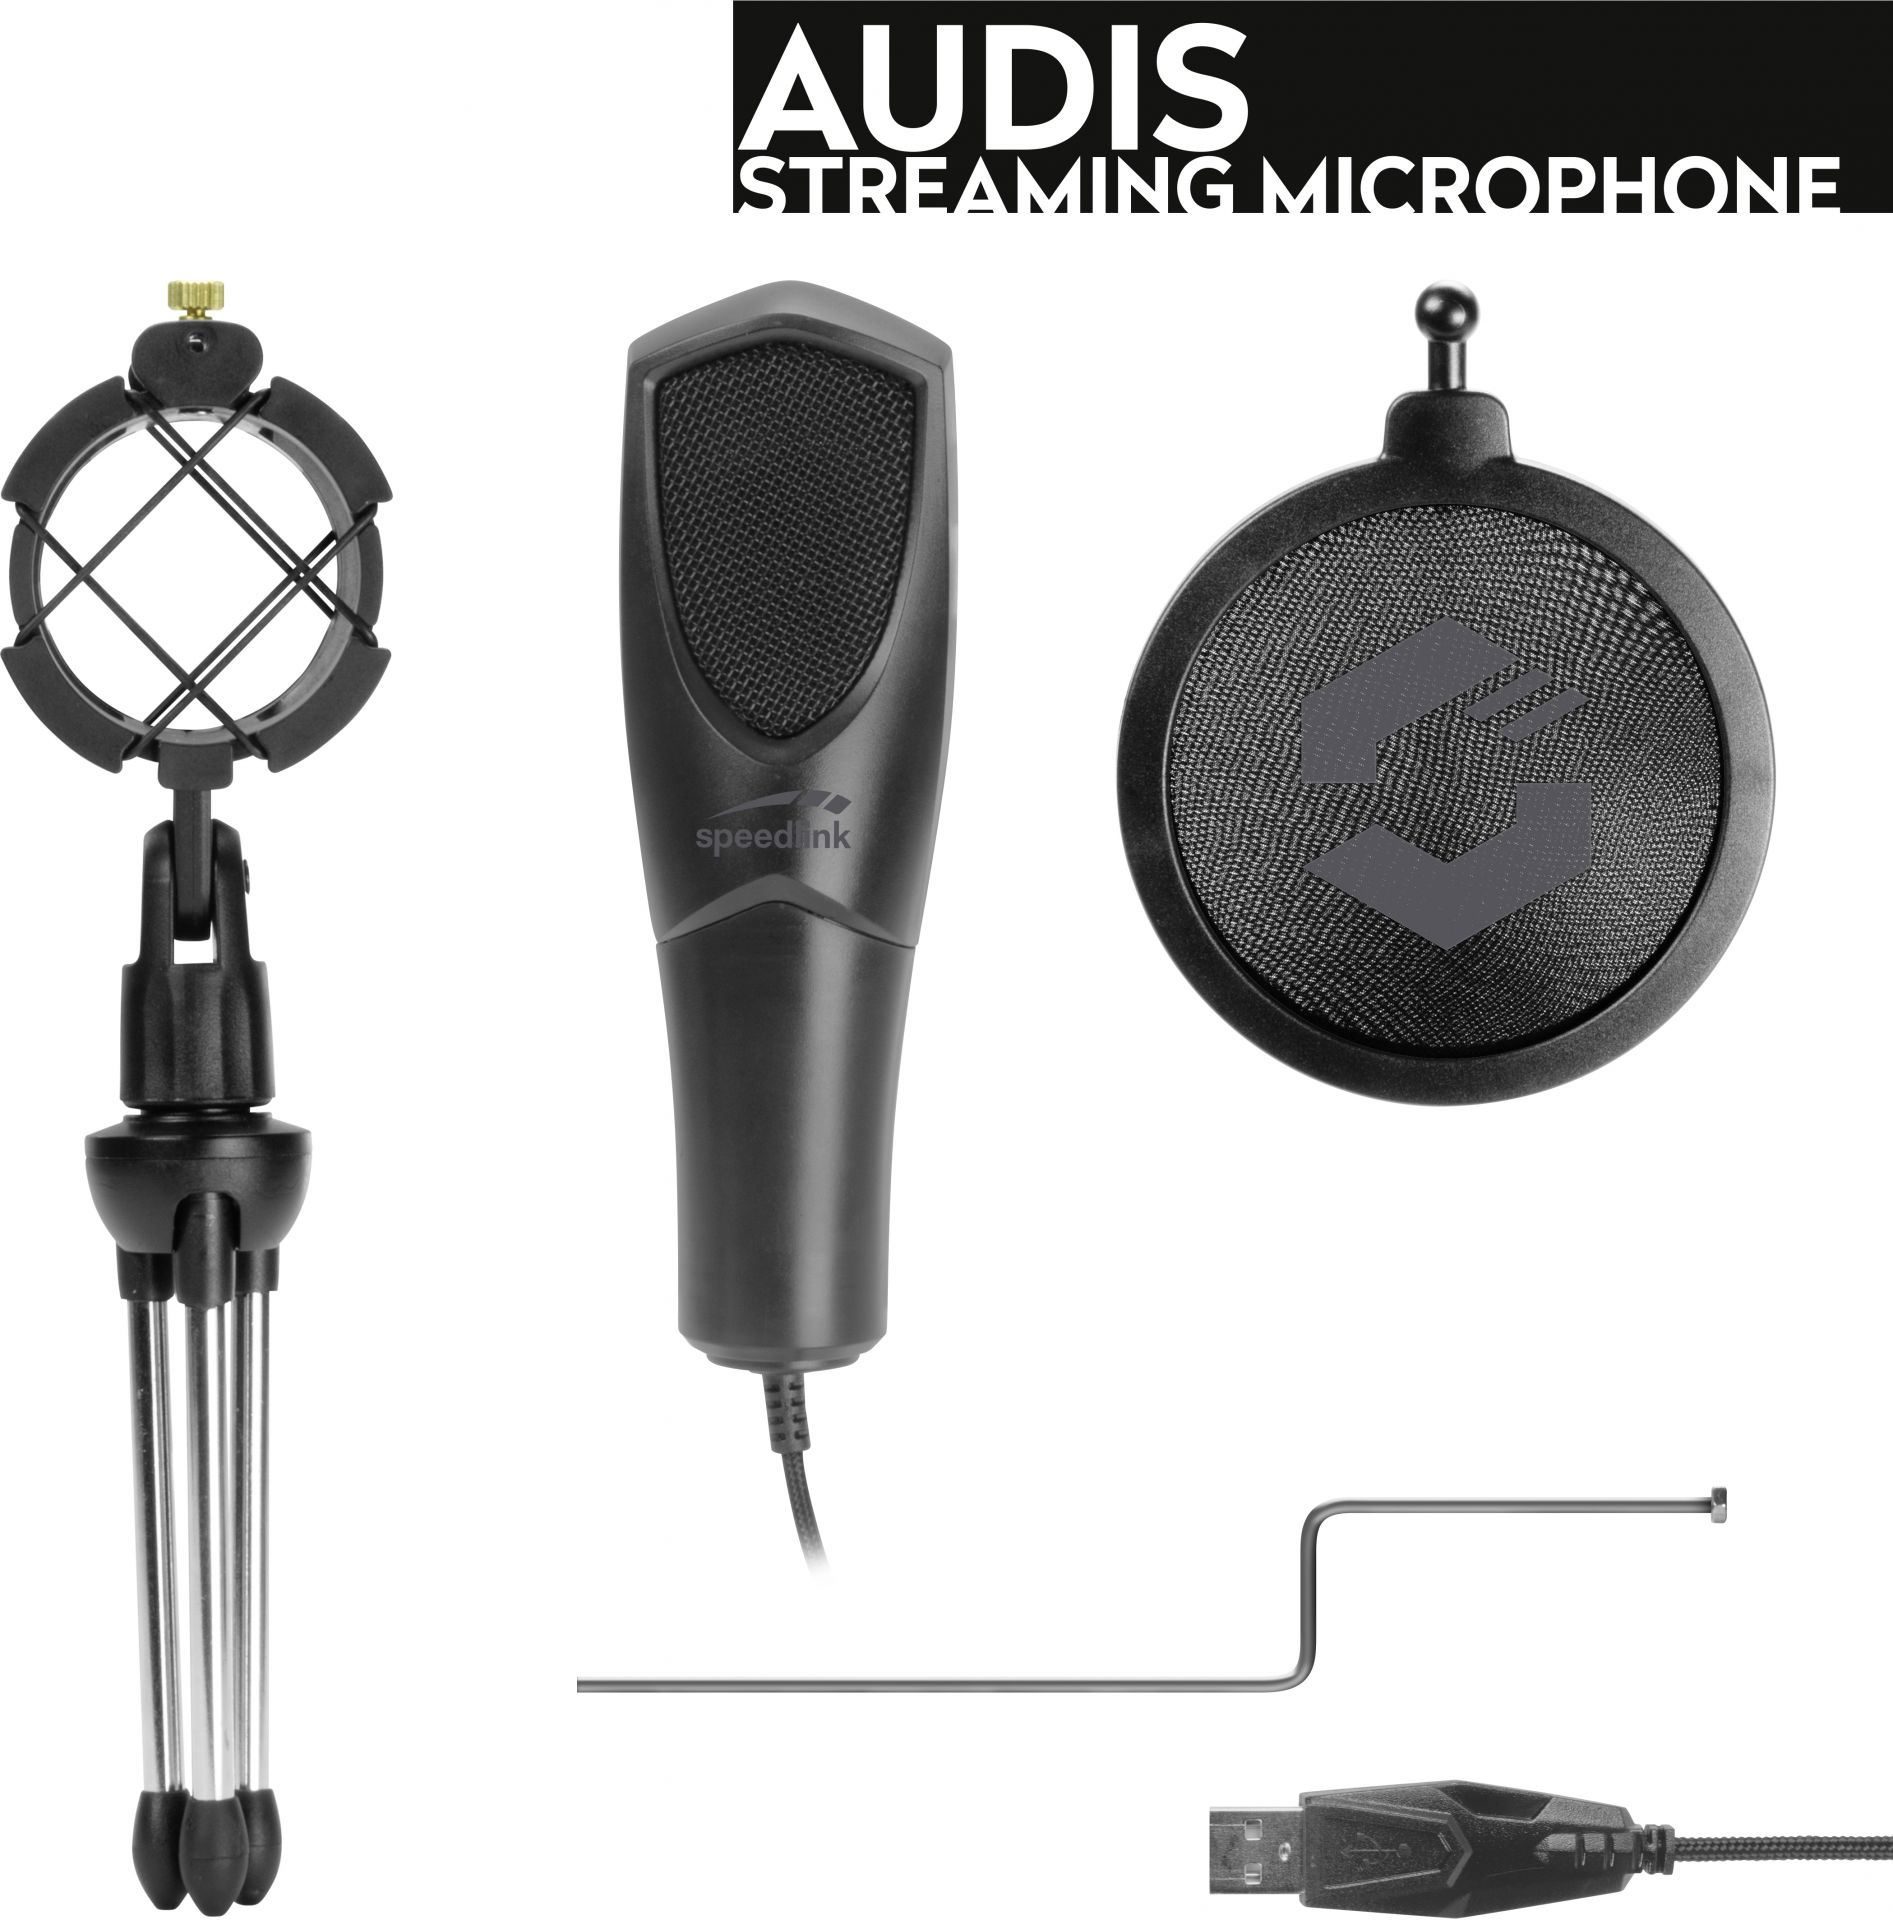 SPEEDLINK Audis Streaming Microphone Black SL-800012-BK